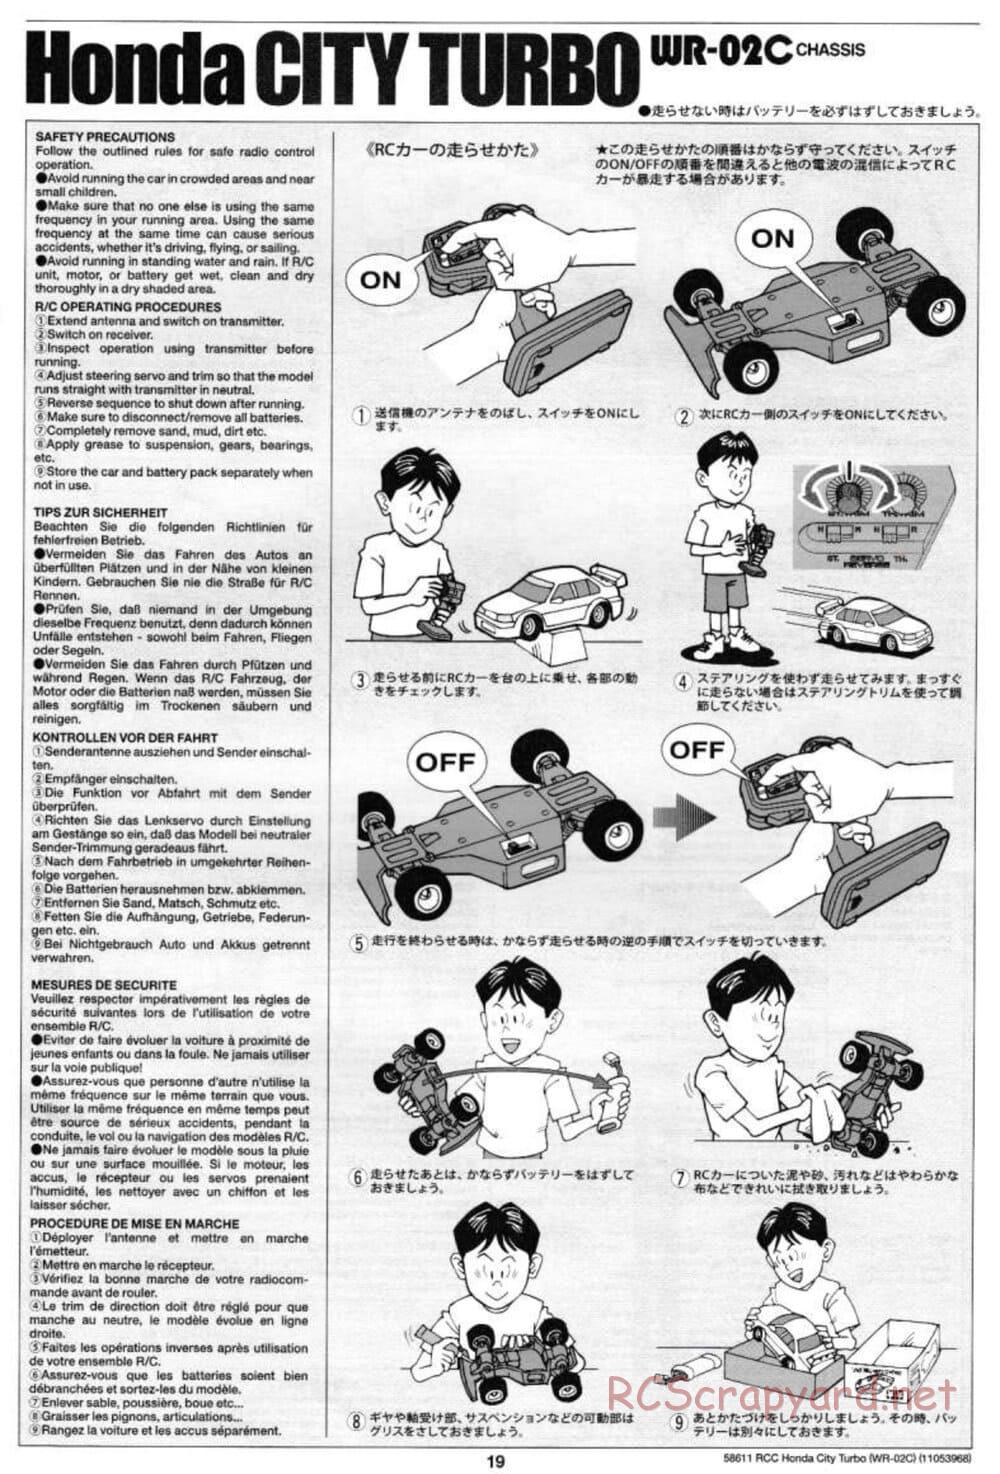 Tamiya - Honda City Turbo - WR-02C Chassis - Manual - Page 19